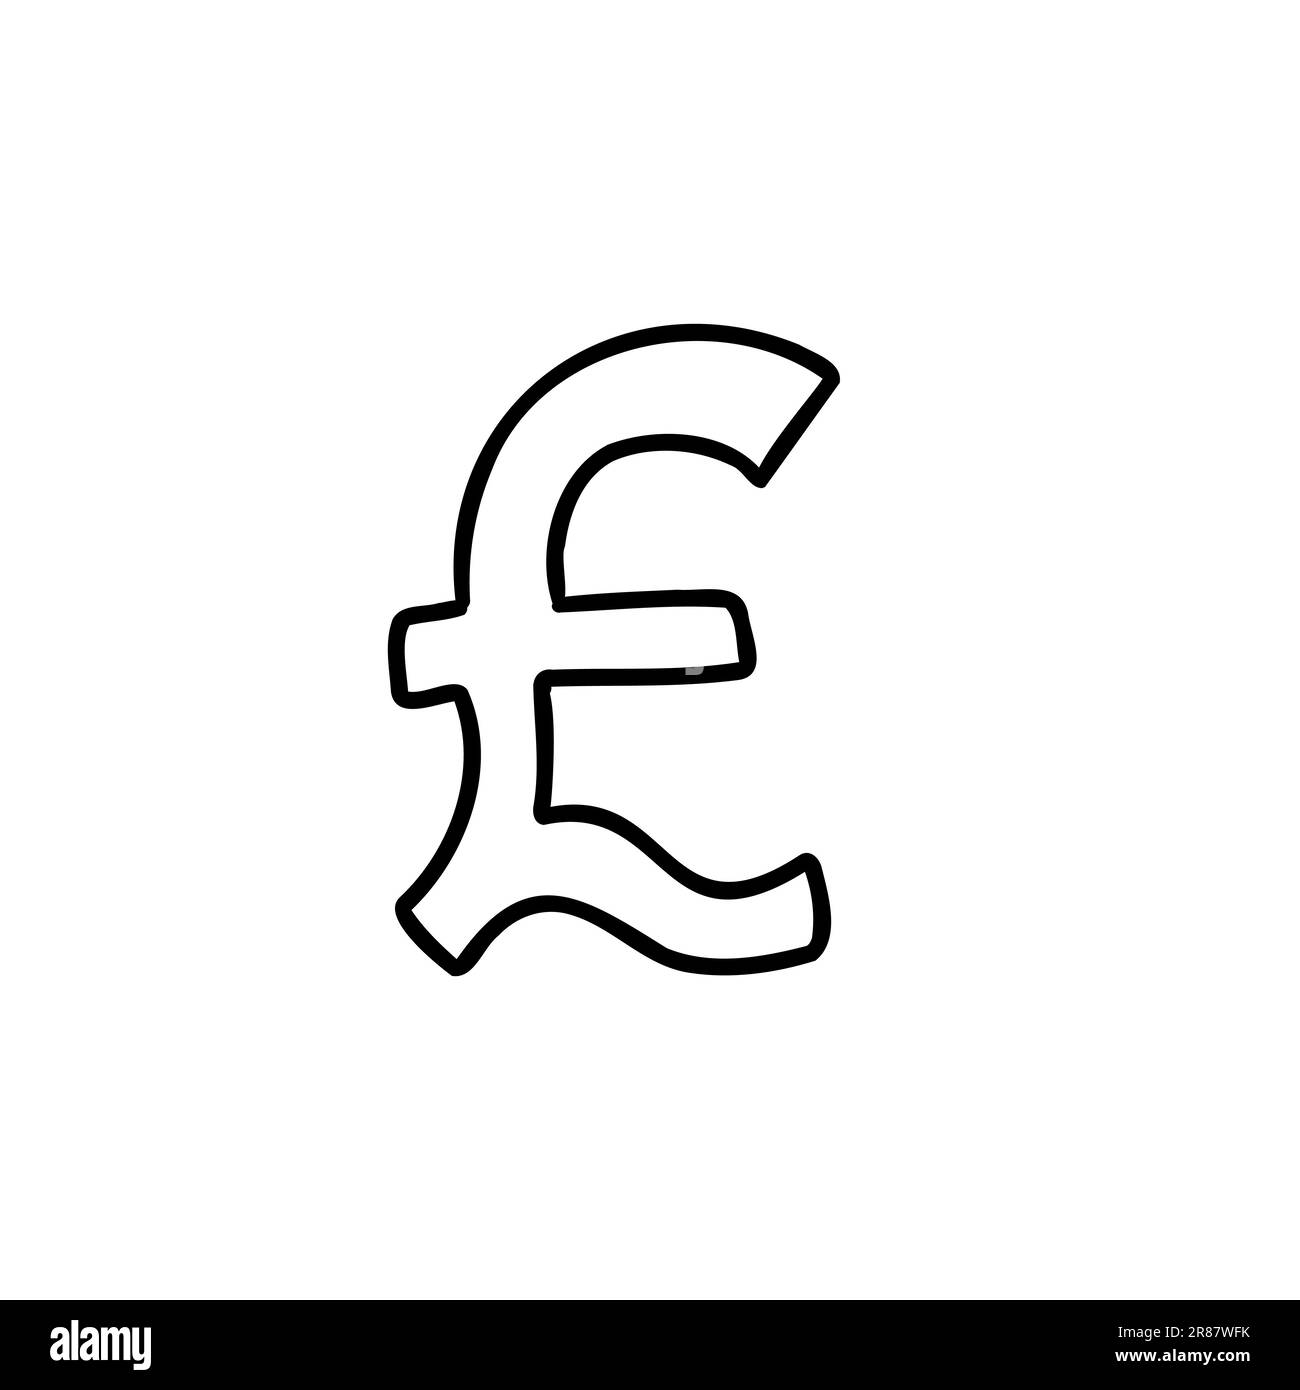 Abbozzata moneta denaro finanza segno icona Pound Sterling GBR. Illustrazione vettoriale in stile fumetto disegnata a mano isolato su sfondo bianco. Per Illustrazione Vettoriale